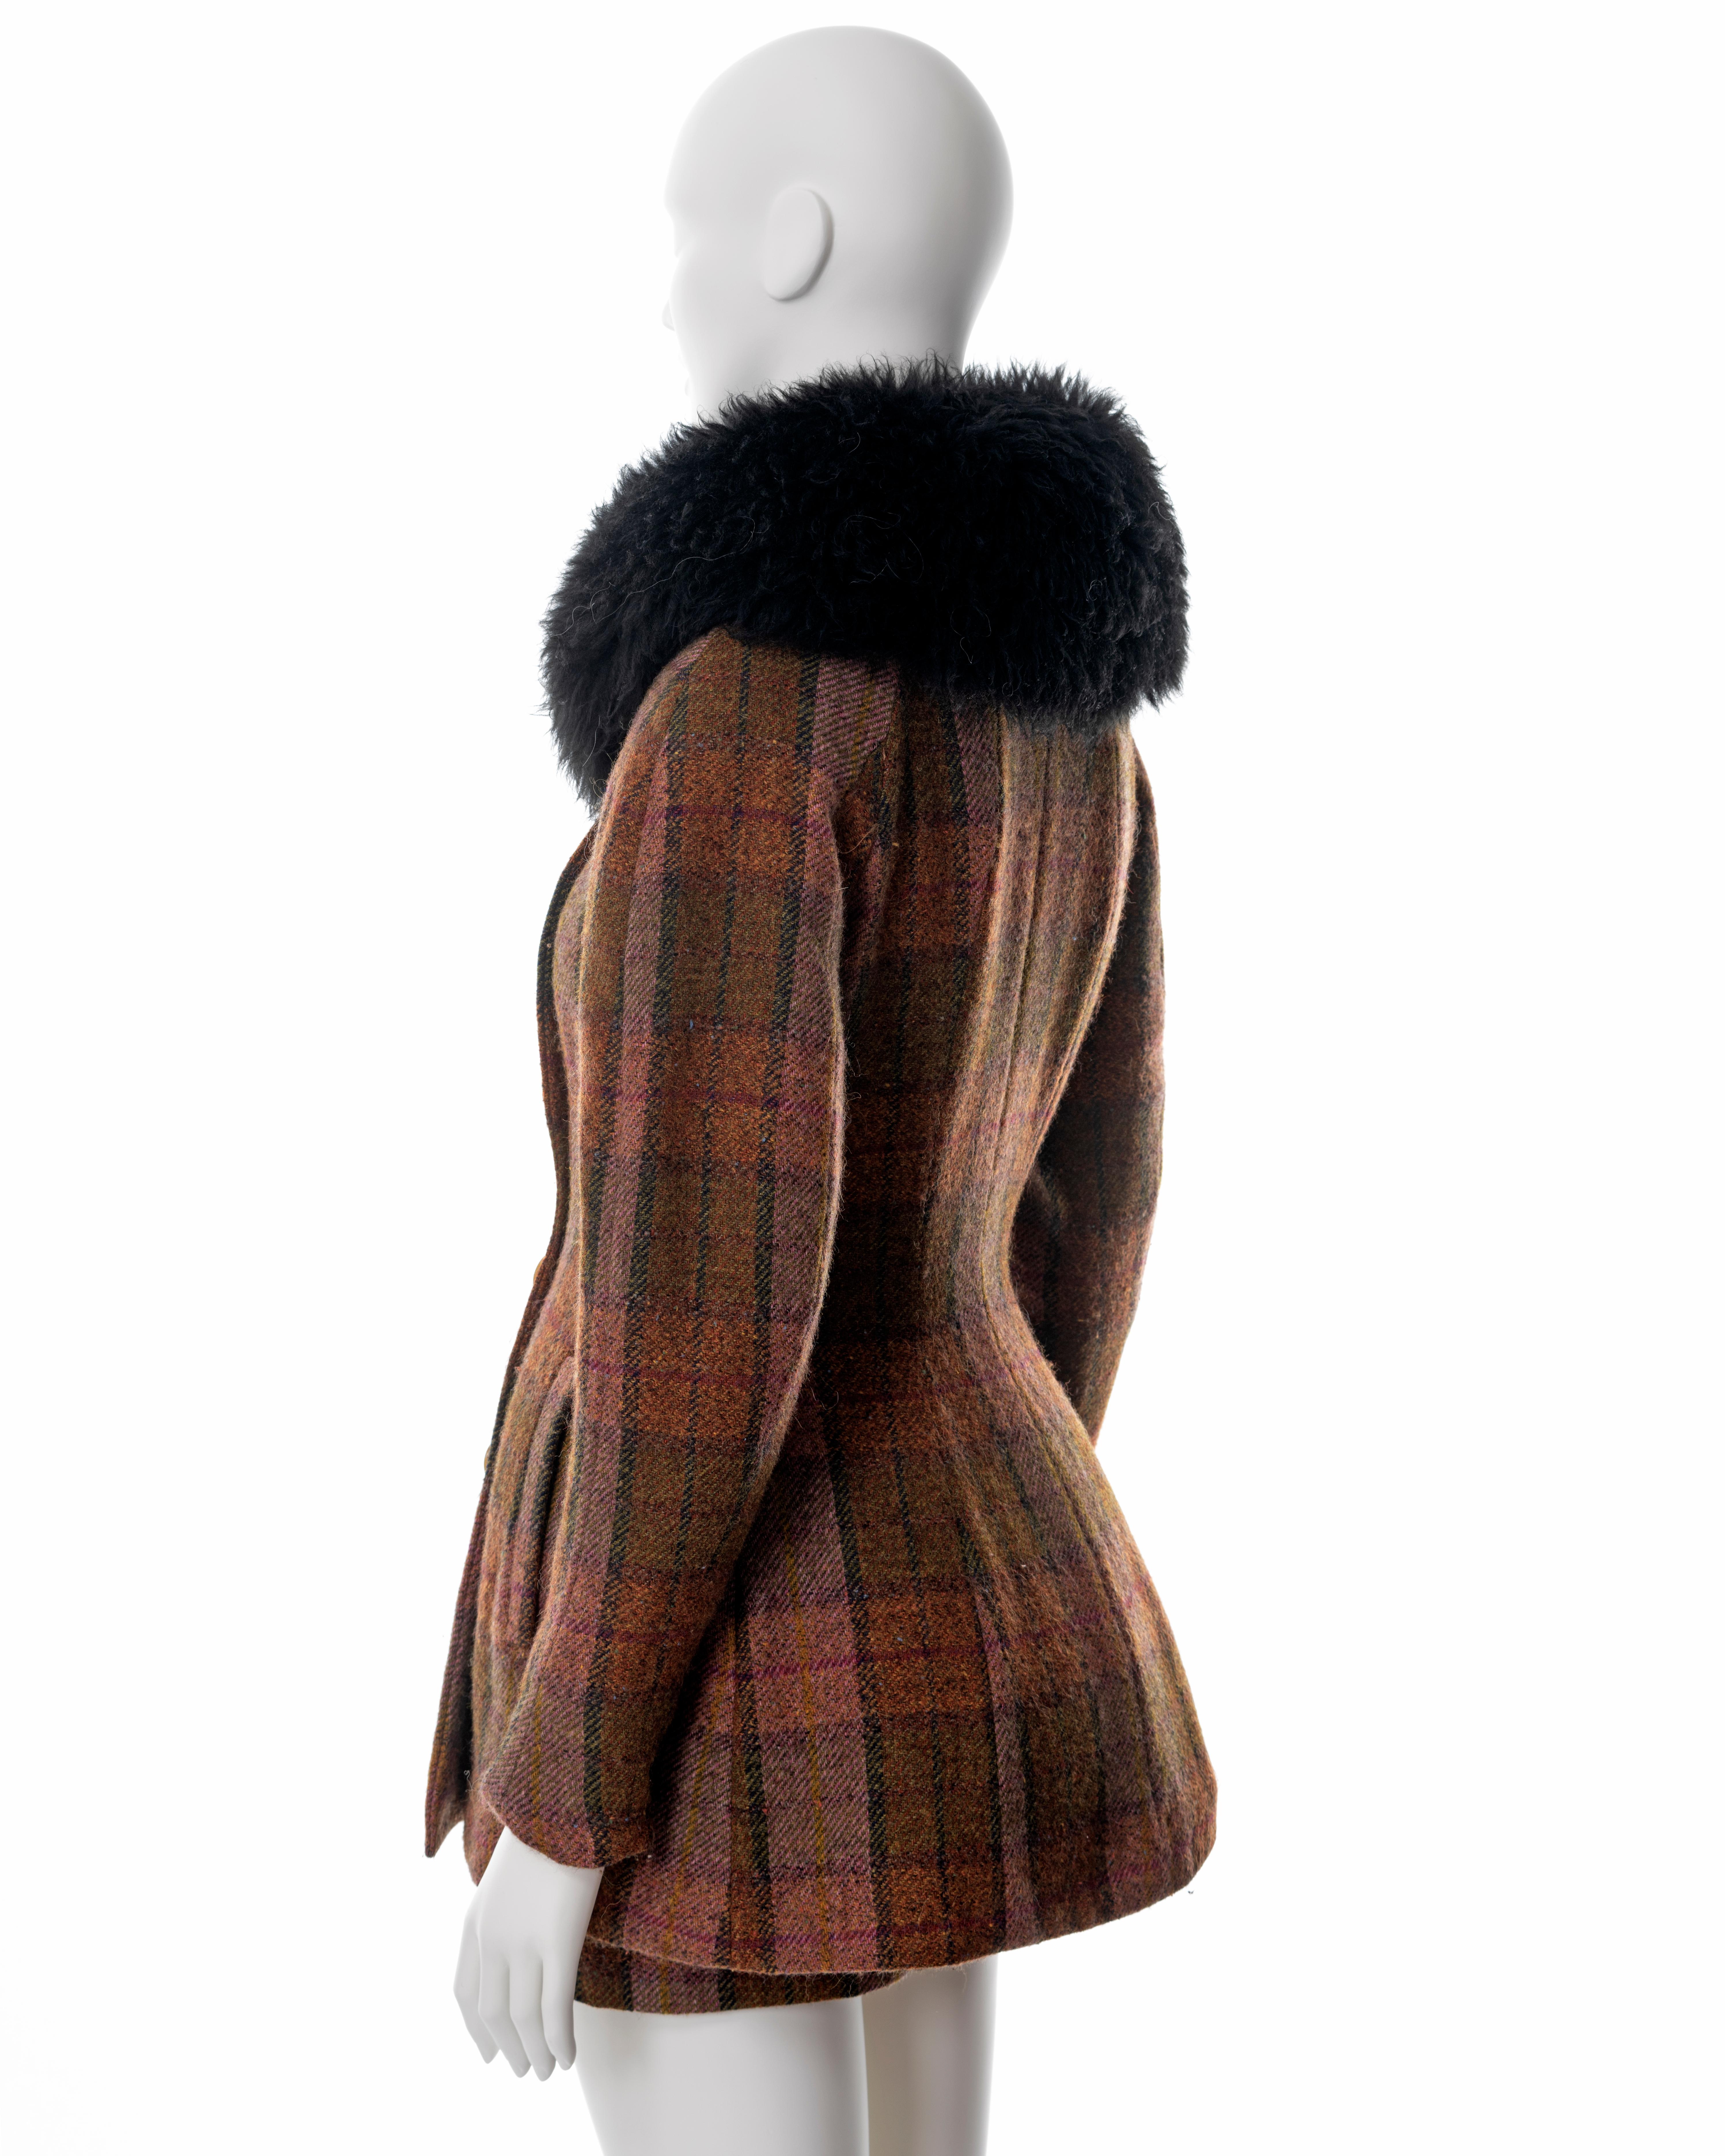 Vivienne Westwood brown tartan tweed skirt suit with sheepskin collar, fw 1995 5